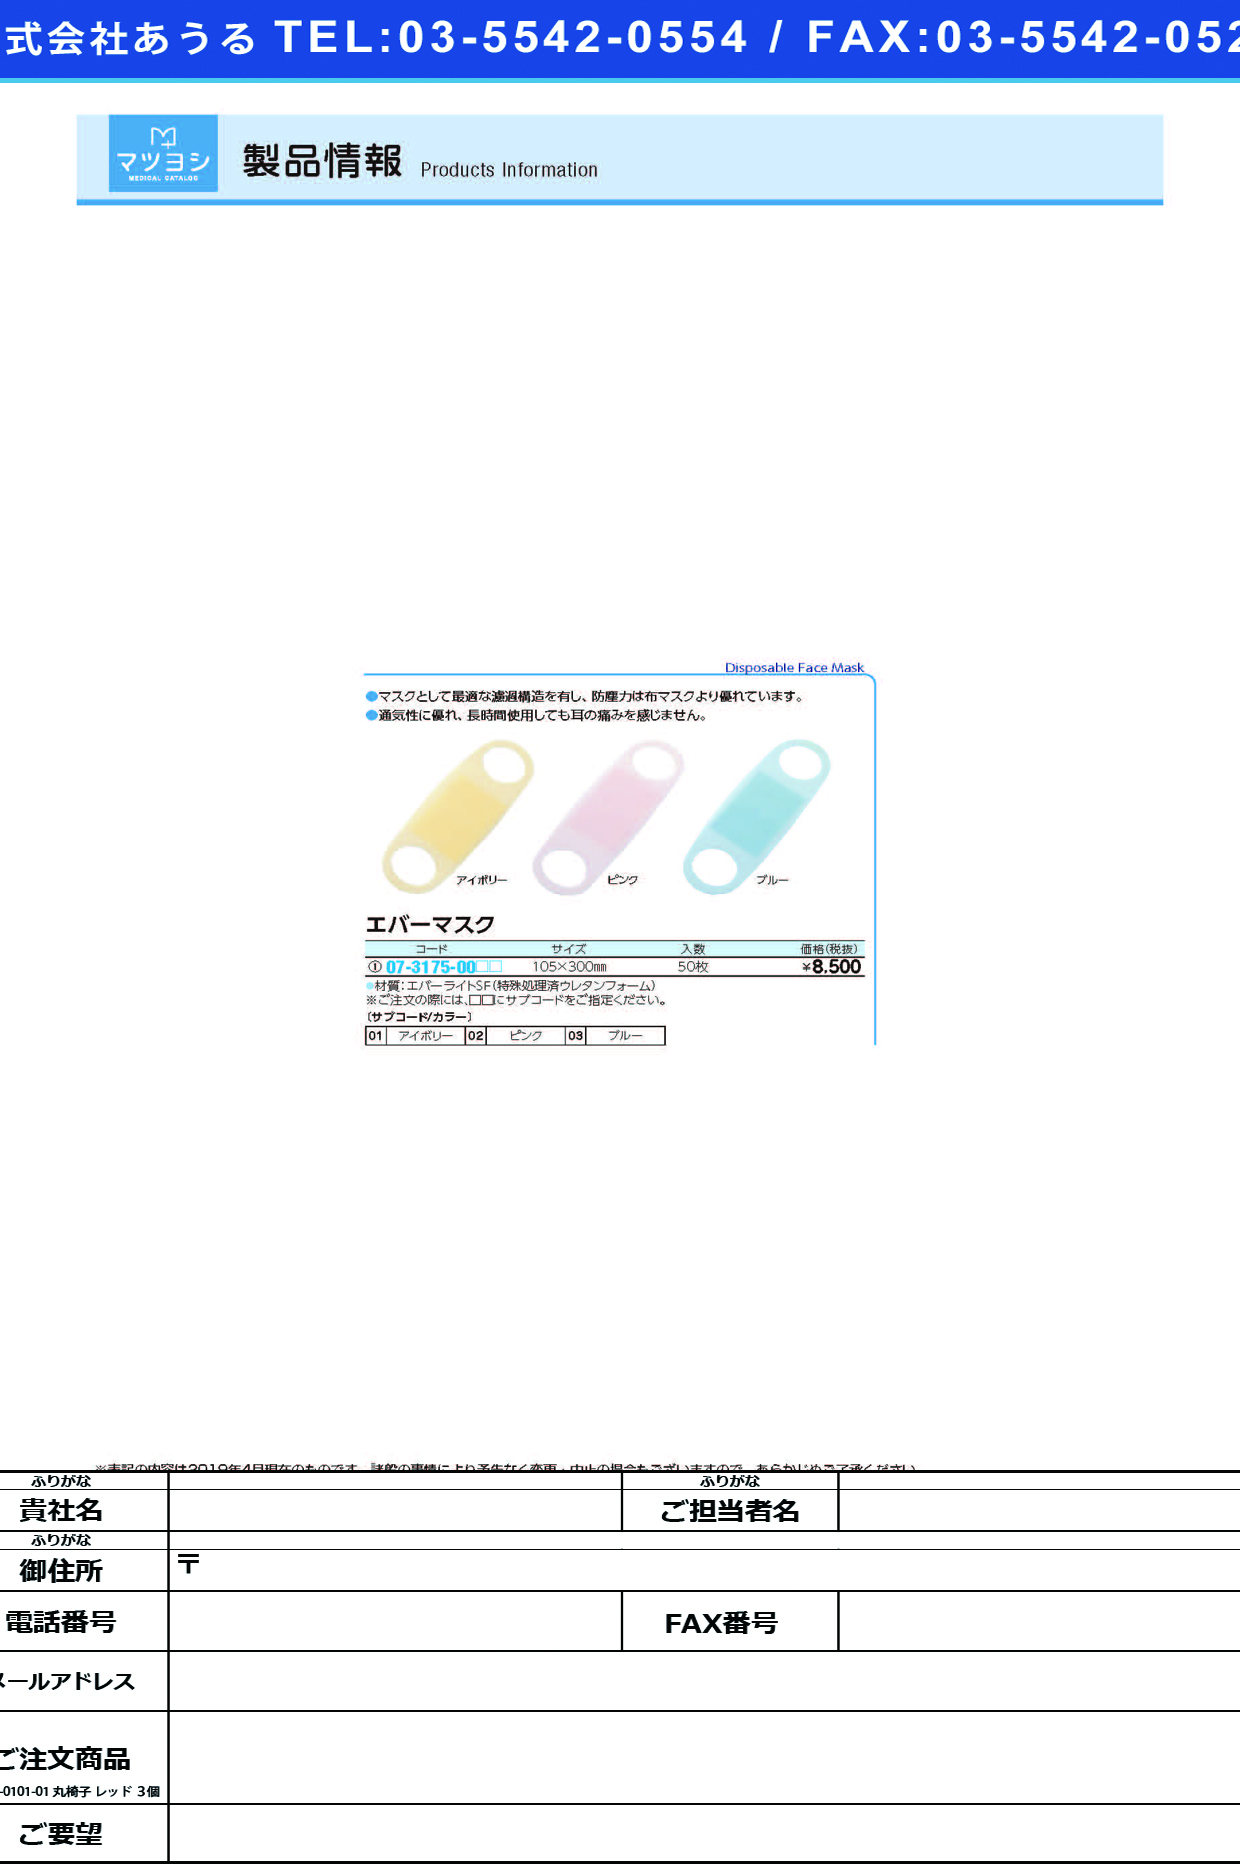 (07-3175-00)エバーマスク 50ﾏｲｲﾘ ｴﾊﾞｰﾏｽｸ ブルー【1箱単位】【2019年カタログ商品】